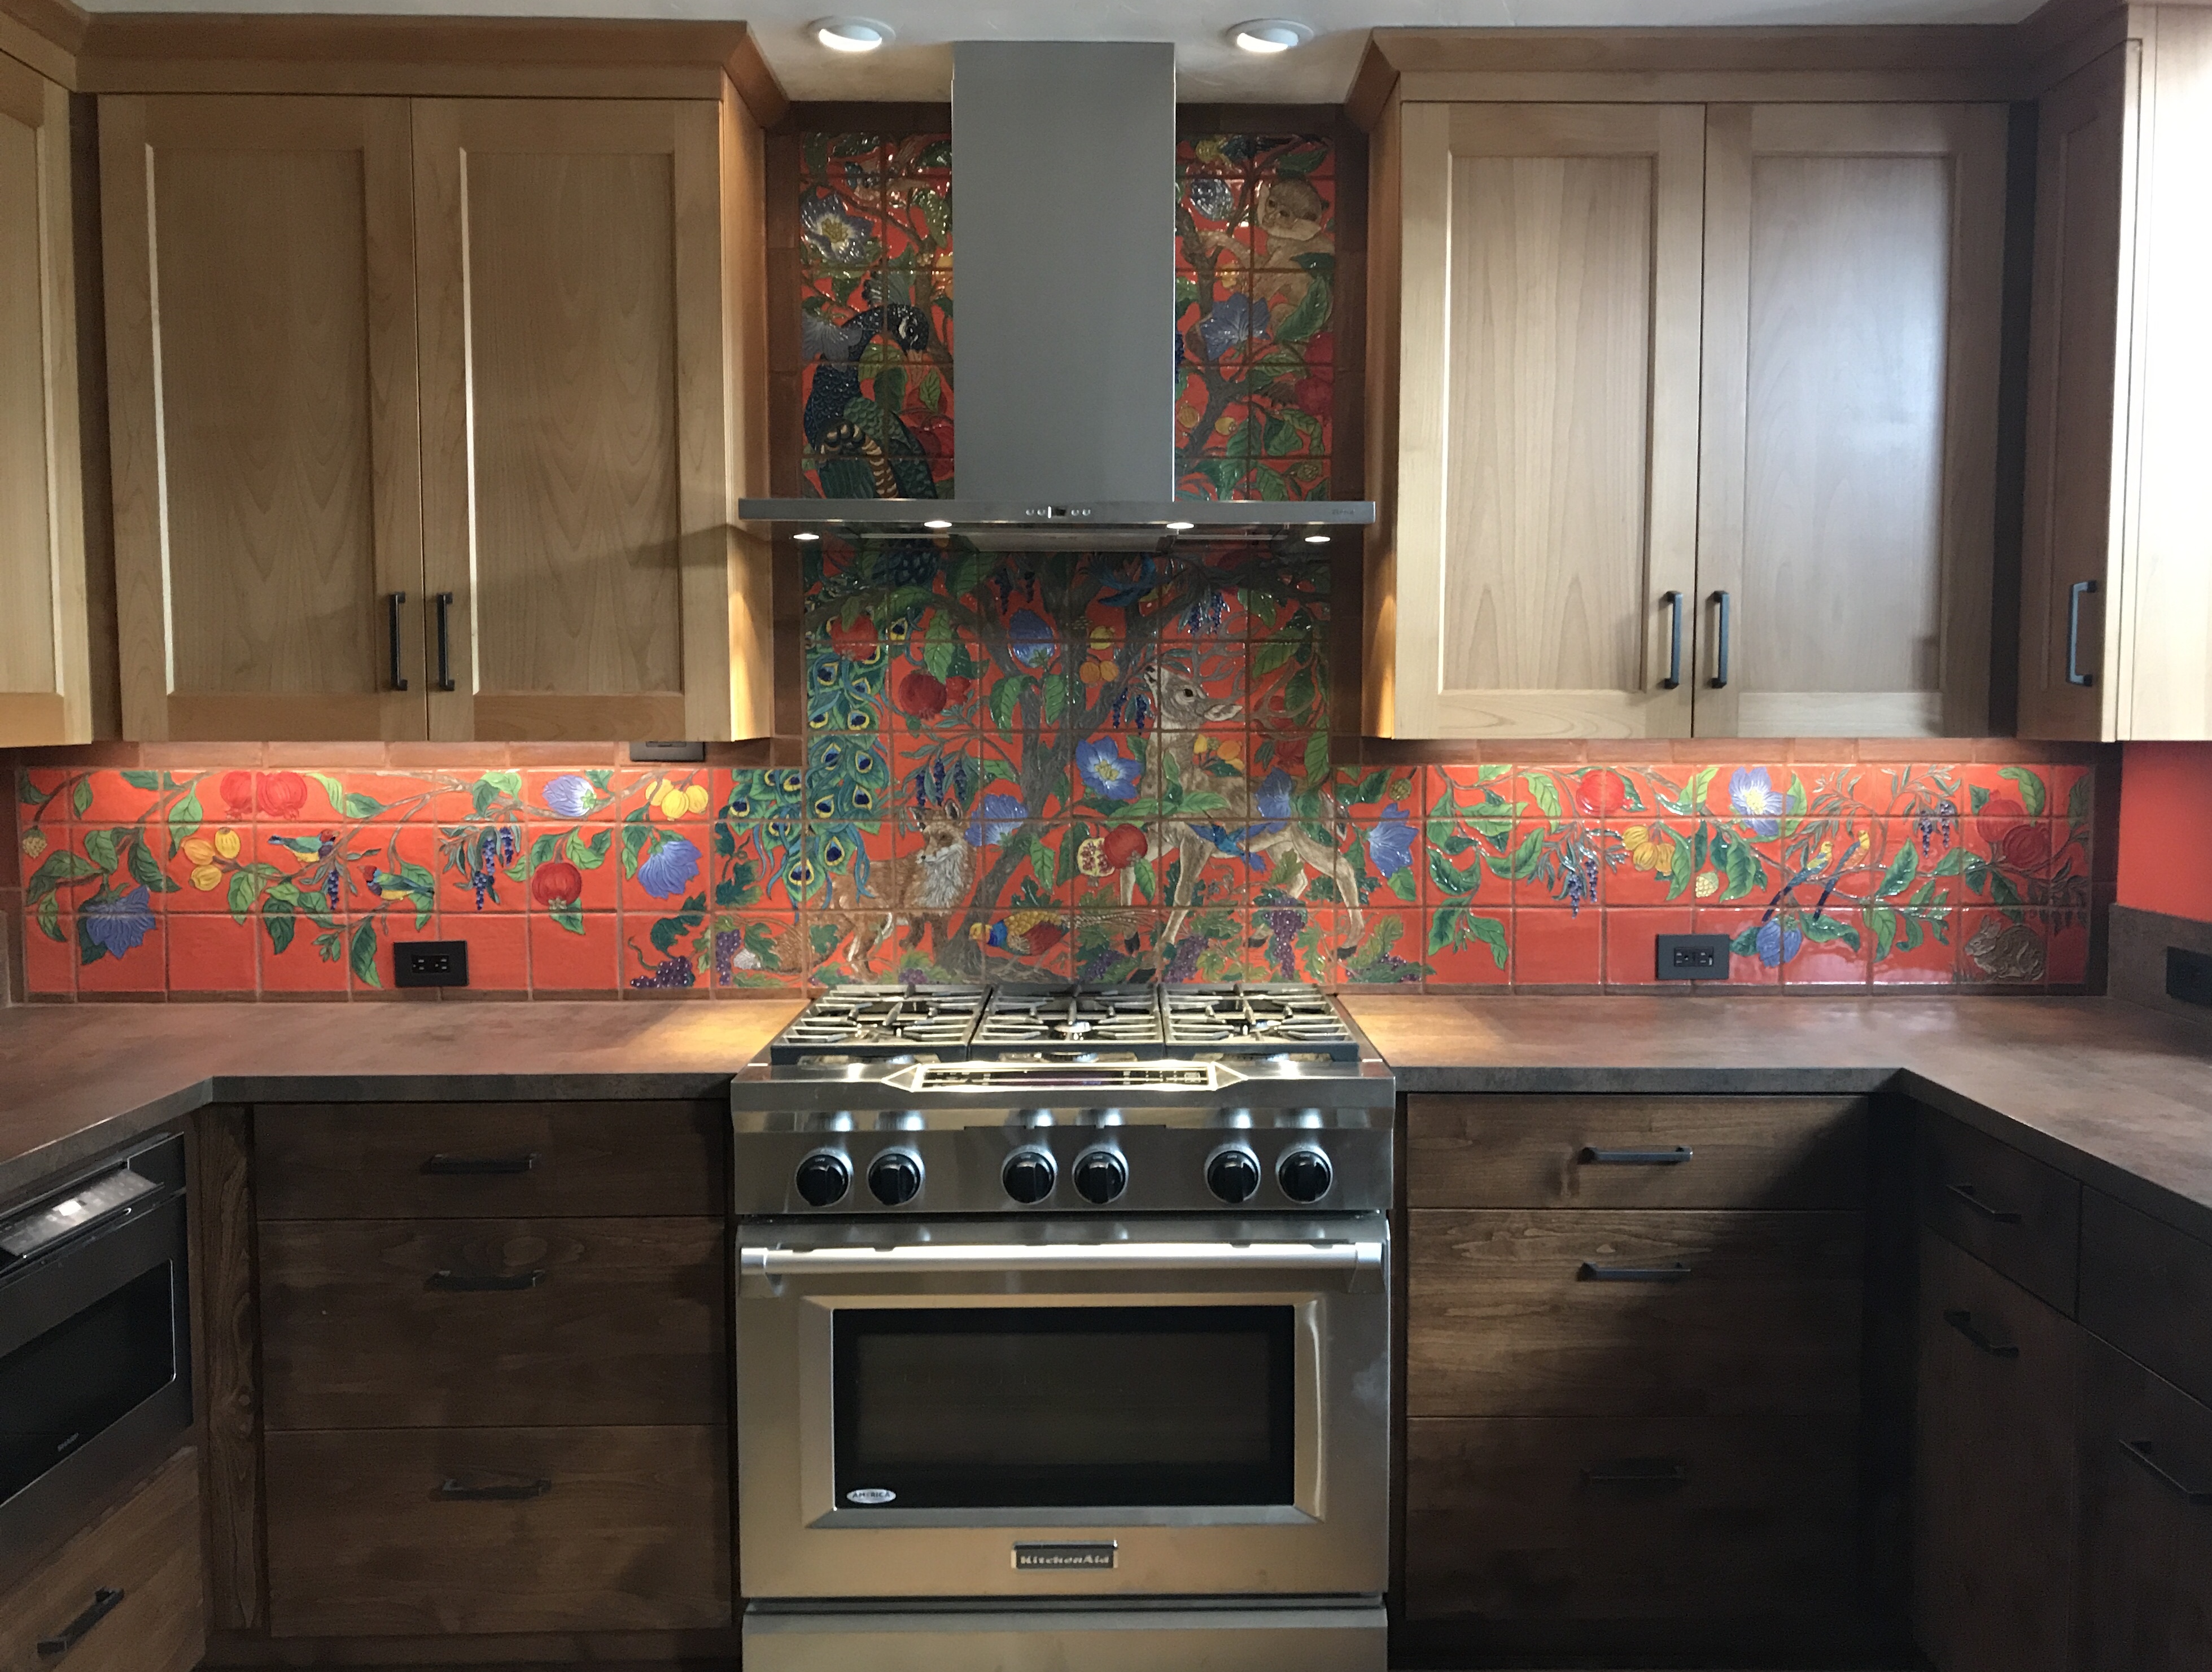 Carved Kitchen Backsplash Mural with Tree of Life Design